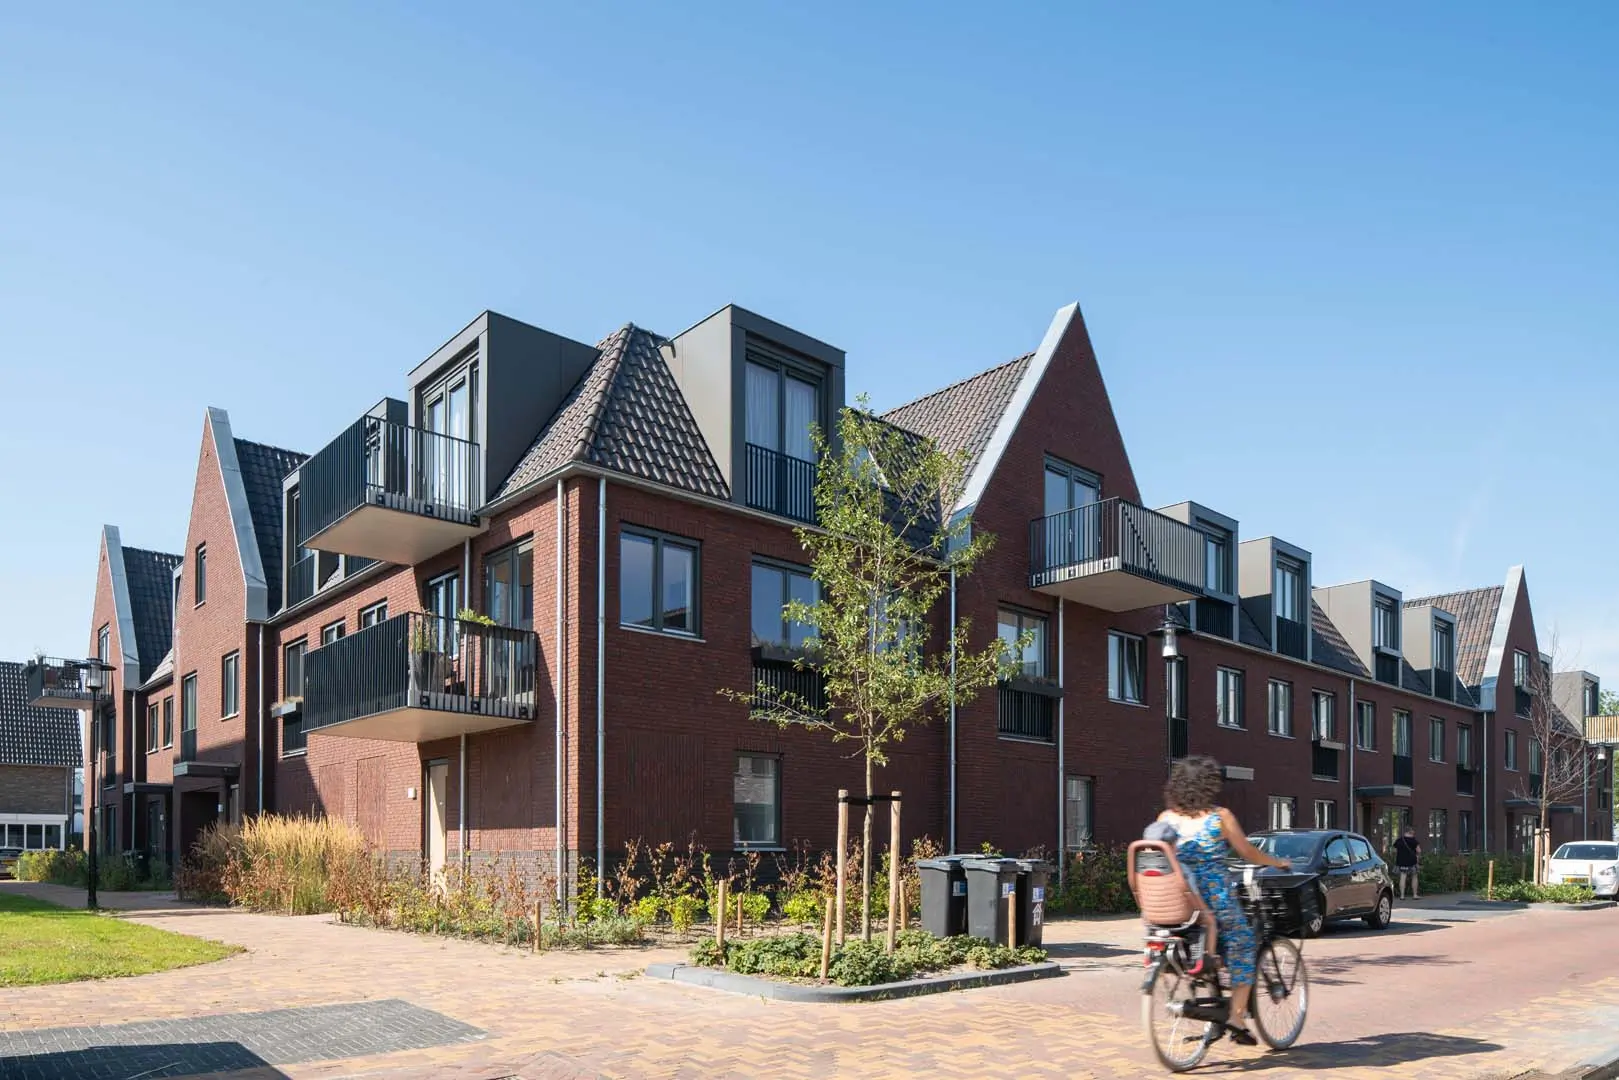 ENZO architectuur N interieur - Egbert de Boer - exterieur - woonwijk - Hillegom - woningcorporatie - building twenty4 - ringoevers